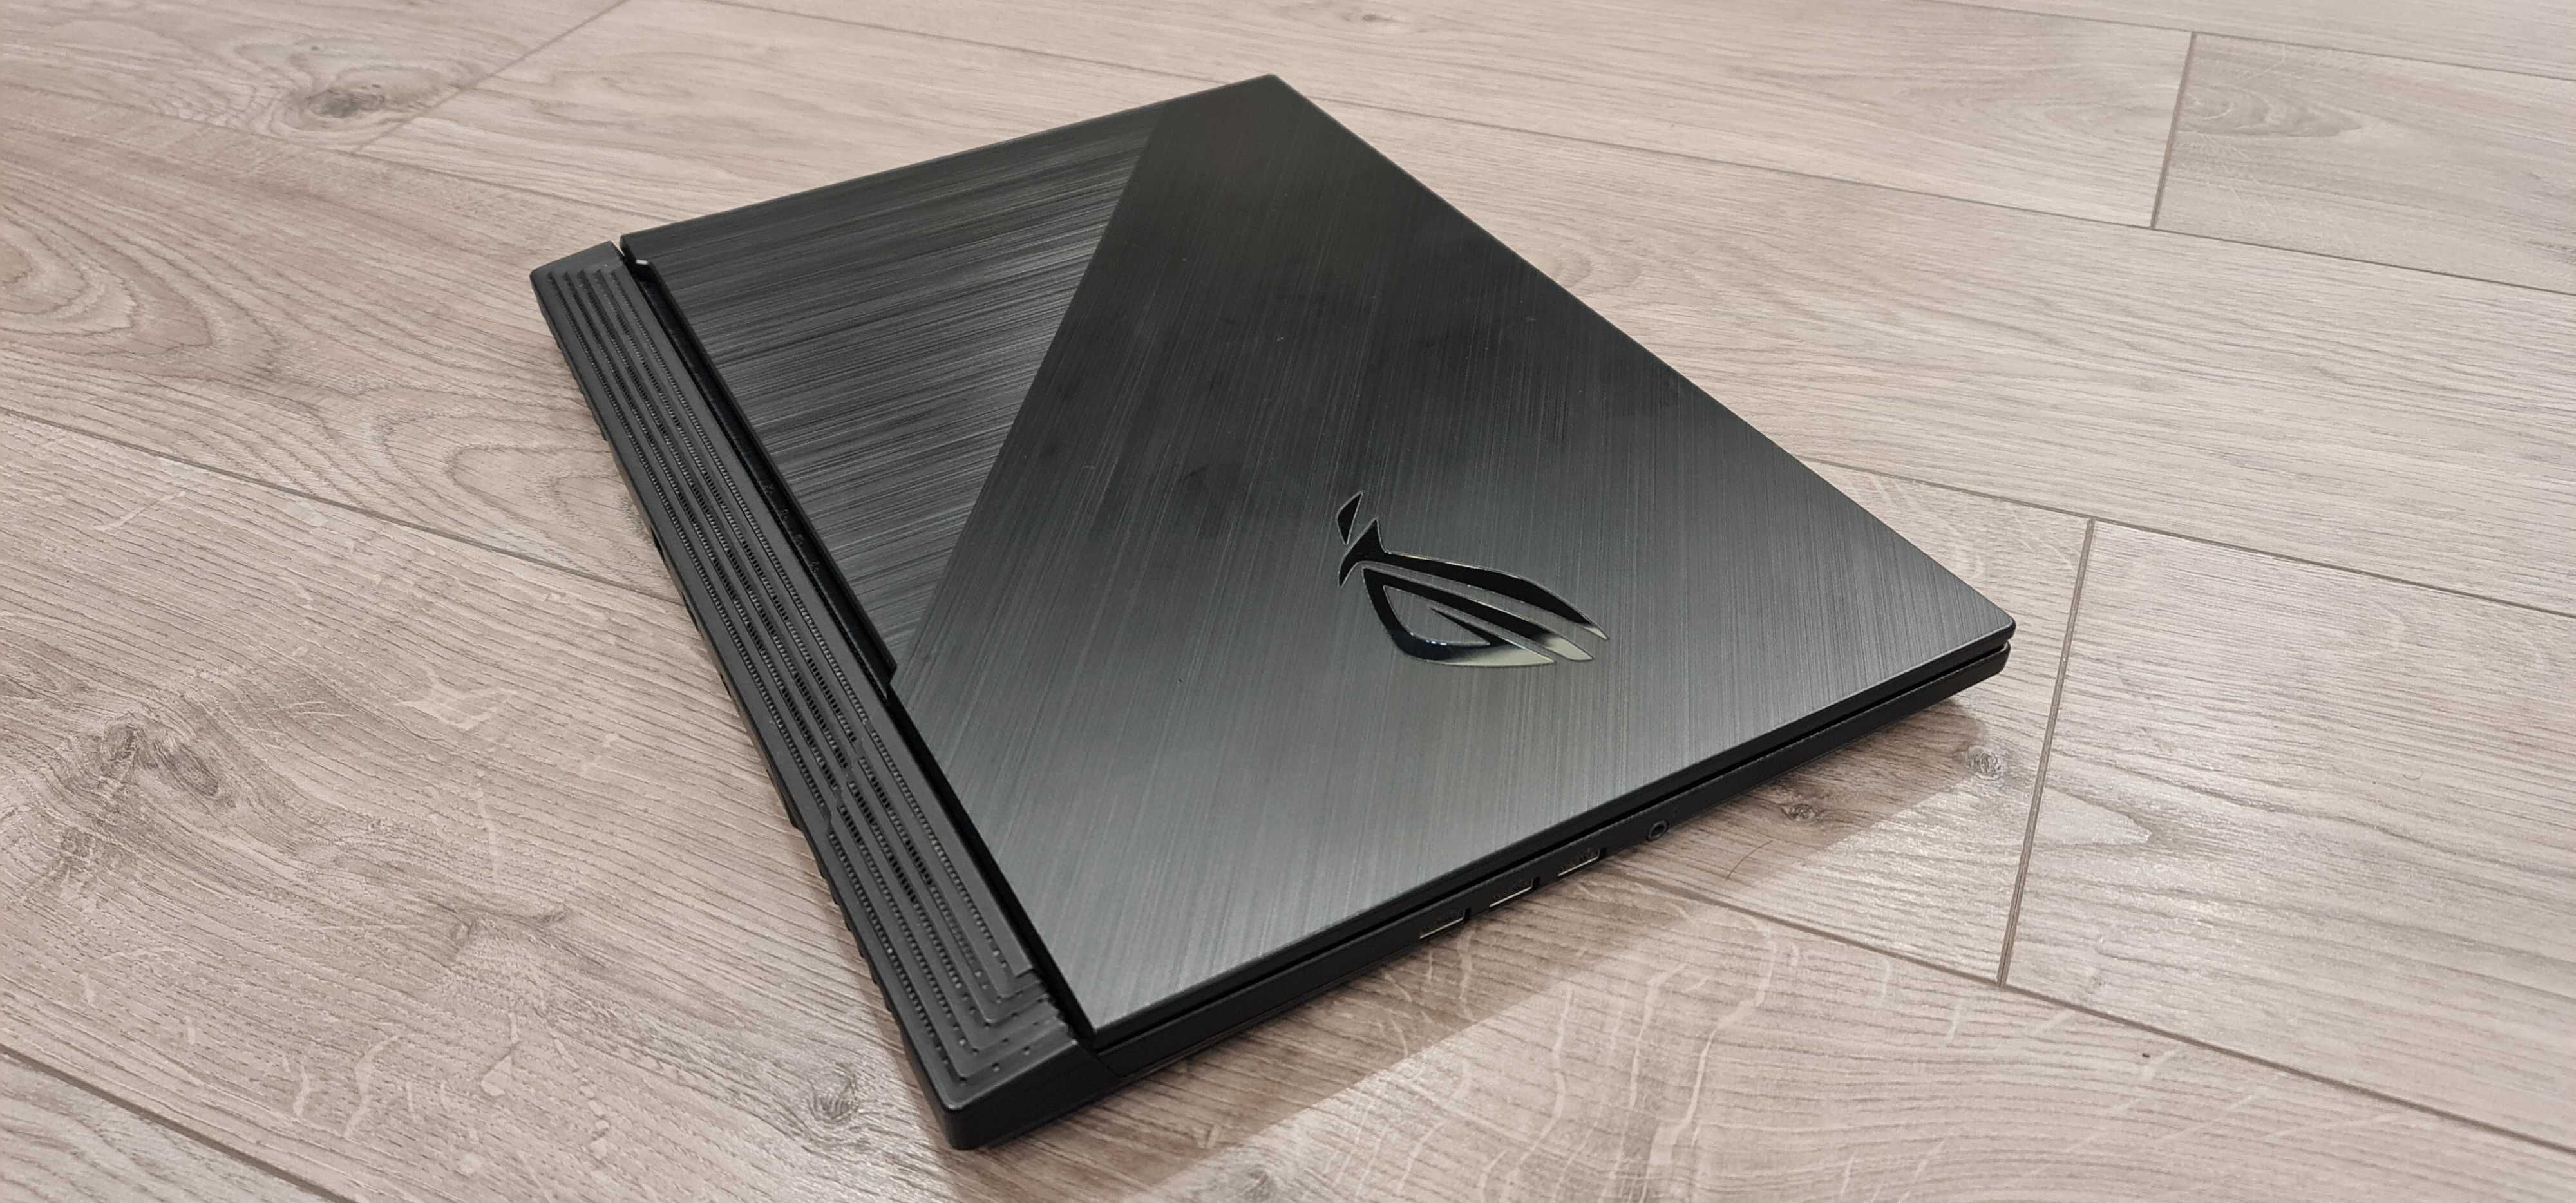 Laptop gaming nou Asus strix 16", intel core i7-9750H, 16 gb ram